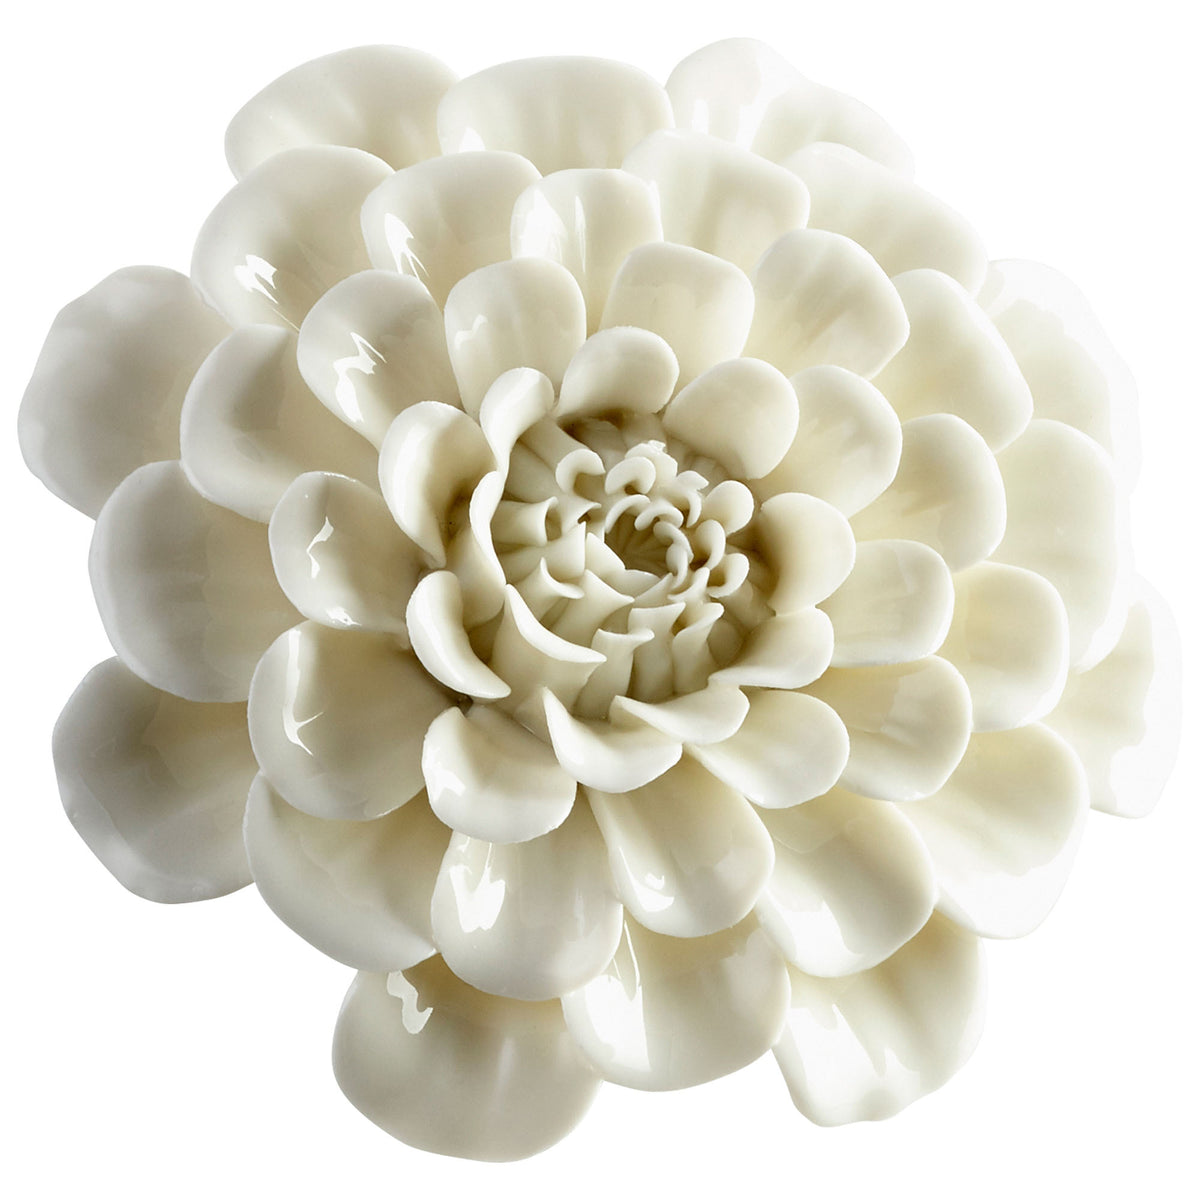 Flourishing Flowers - White